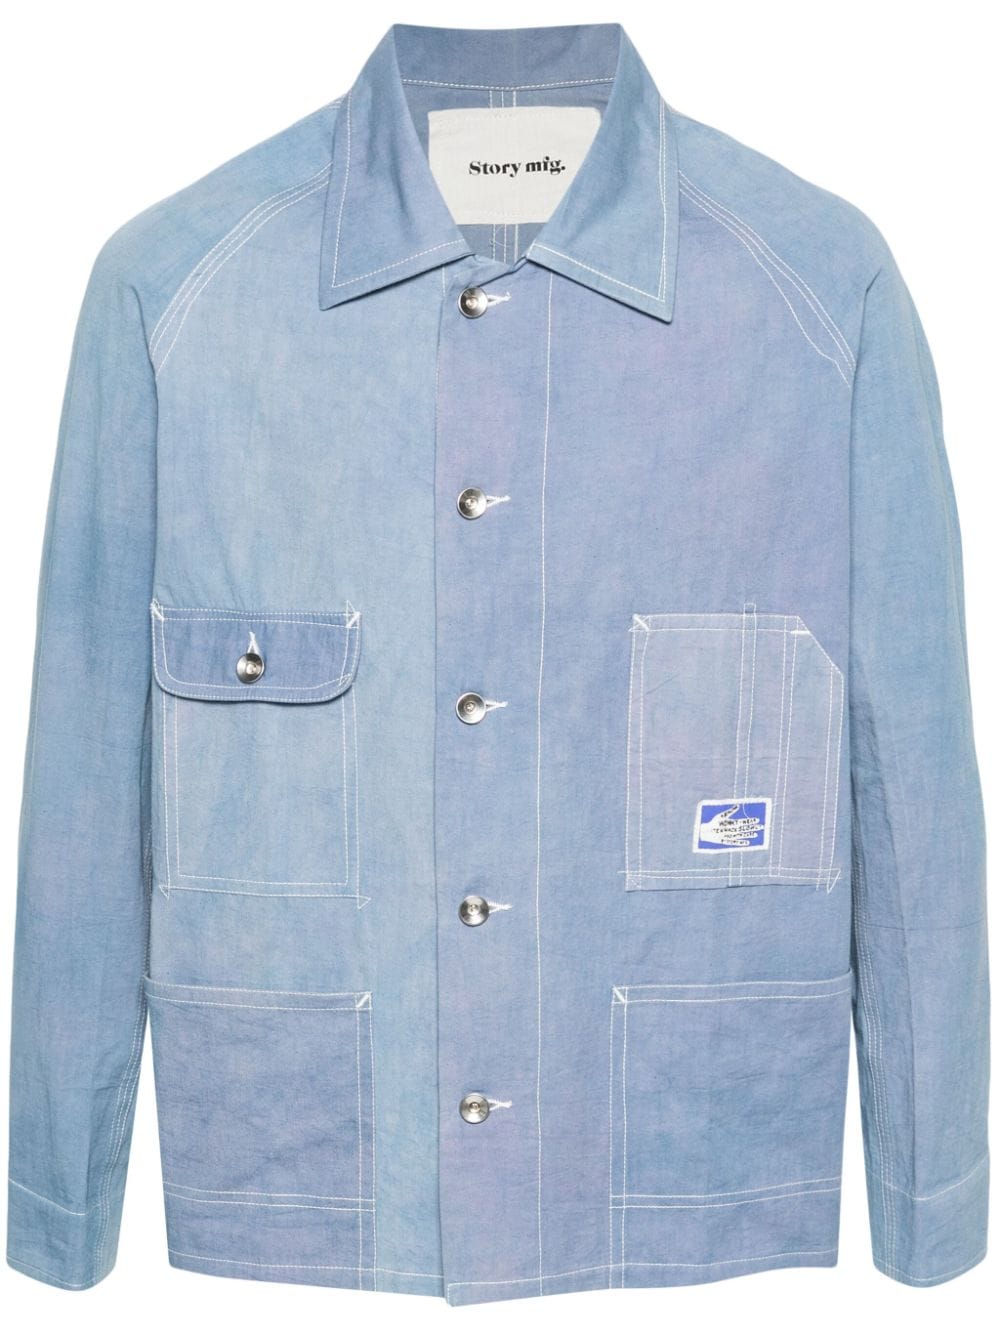 STORY mfg. Railroad shirt jacket - Blue von STORY mfg.